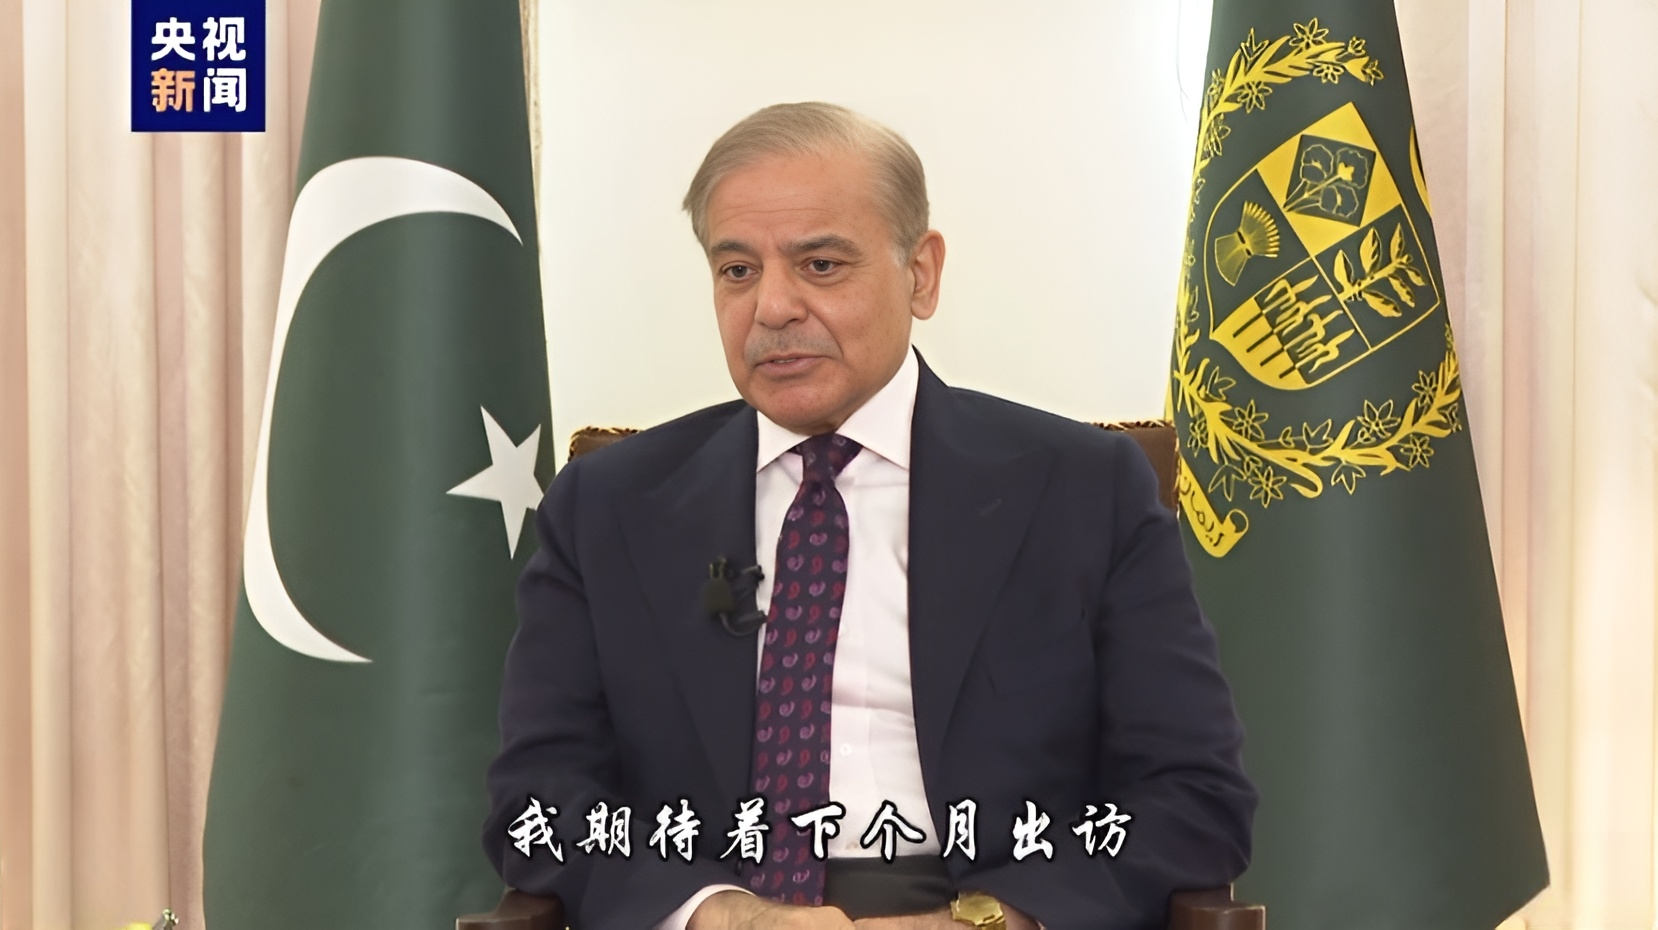 نخست وزیر پاکستان: 3 ابتکار جهانی چین به احیای صلح و شکوفایی جهان کمک خواهد کرد